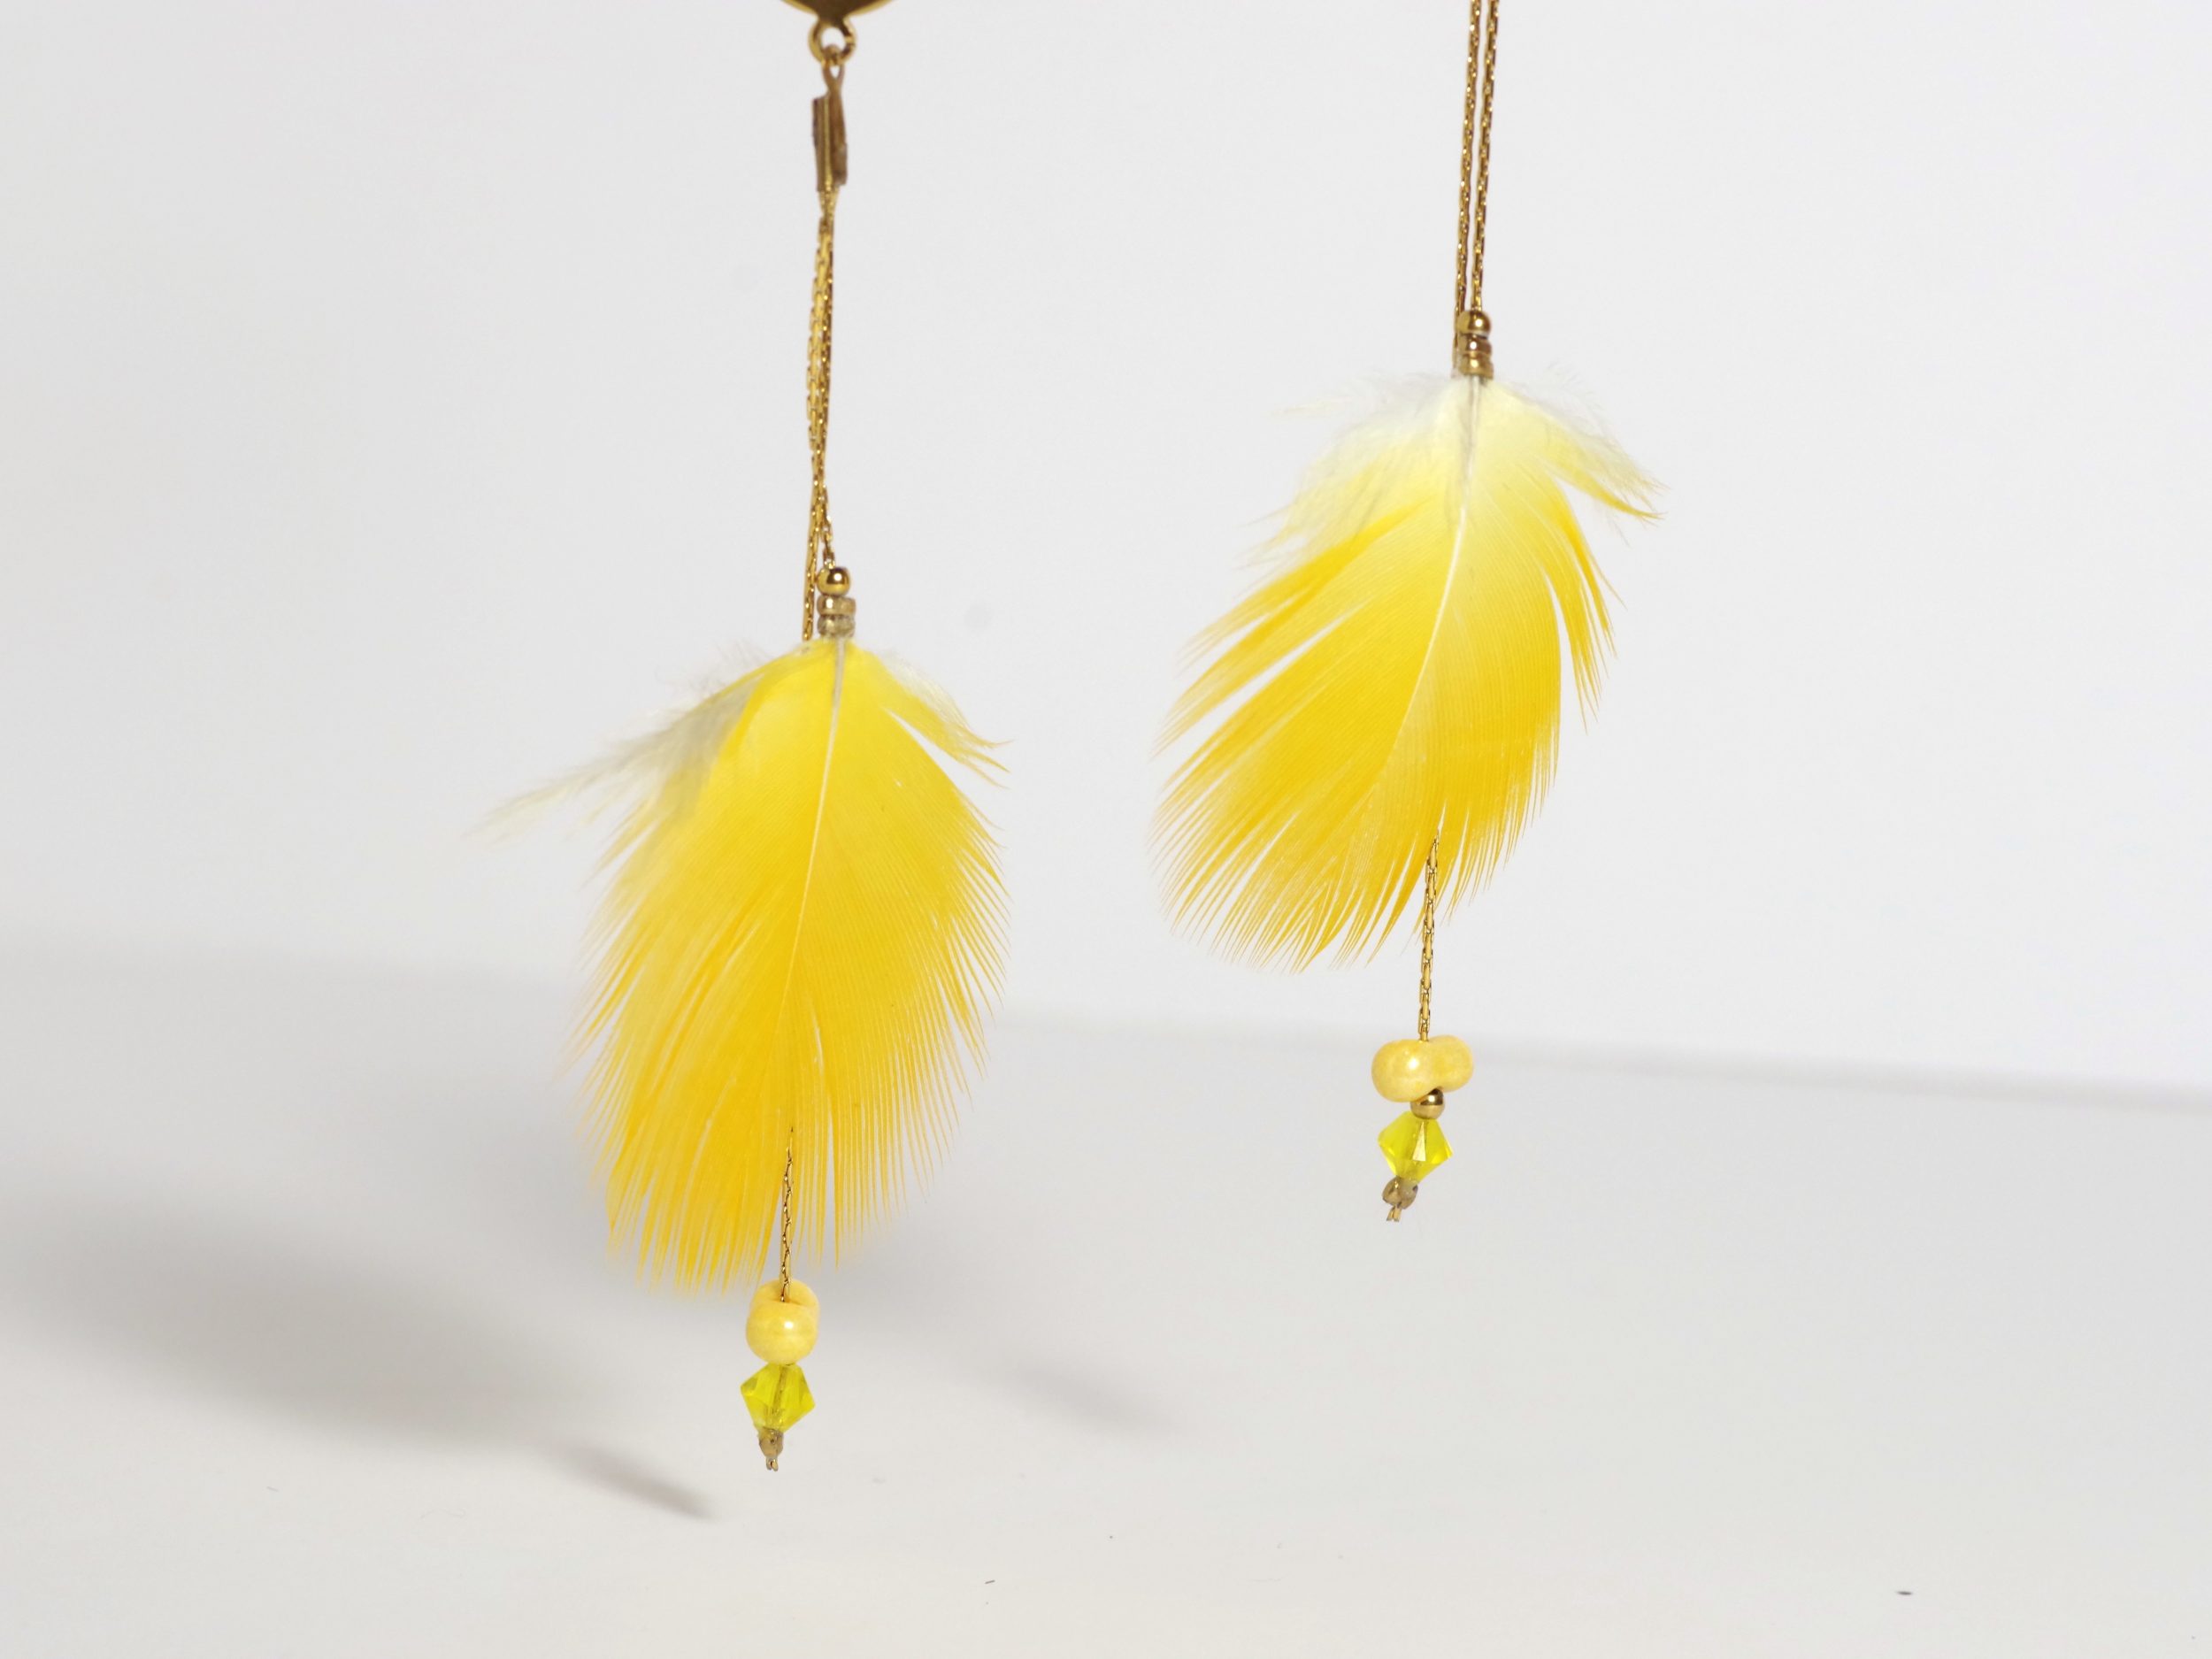 Boucles d'oreilles avec des plumes jaune vif et chaînes dorées